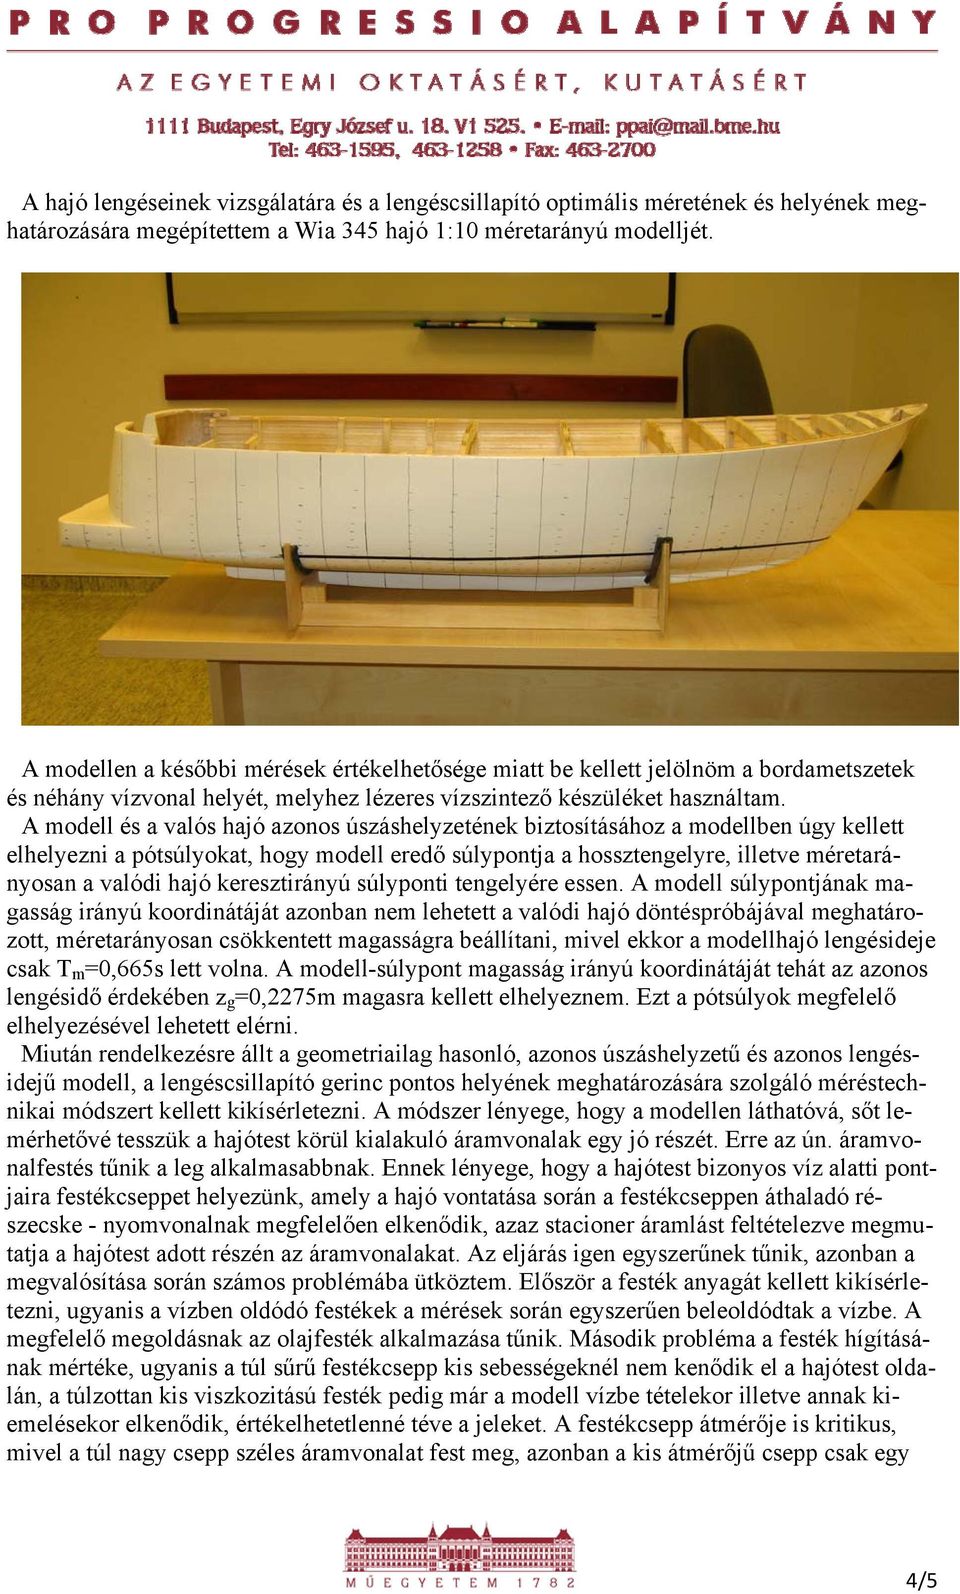 A modell és a valós hajó azonos úszáshelyzetének biztosításához a modellben úgy kellett elhelyezni a pótsúlyokat, hogy modell eredő súlypontja a hossztengelyre, illetve méretarányosan a valódi hajó